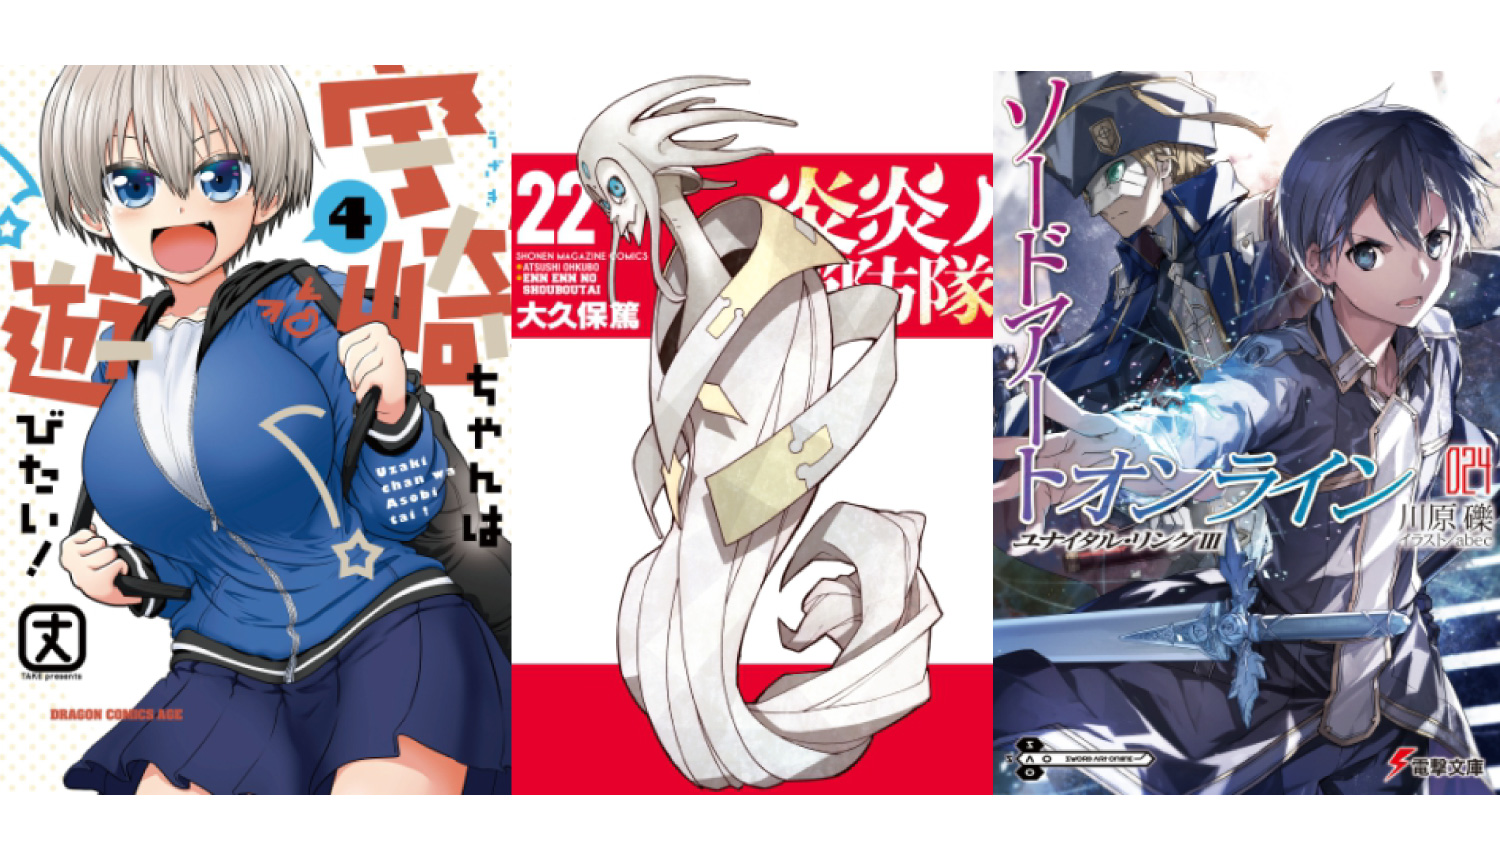 Fire Force Volume 16 (Enen no Shouboutai) - Manga Store 